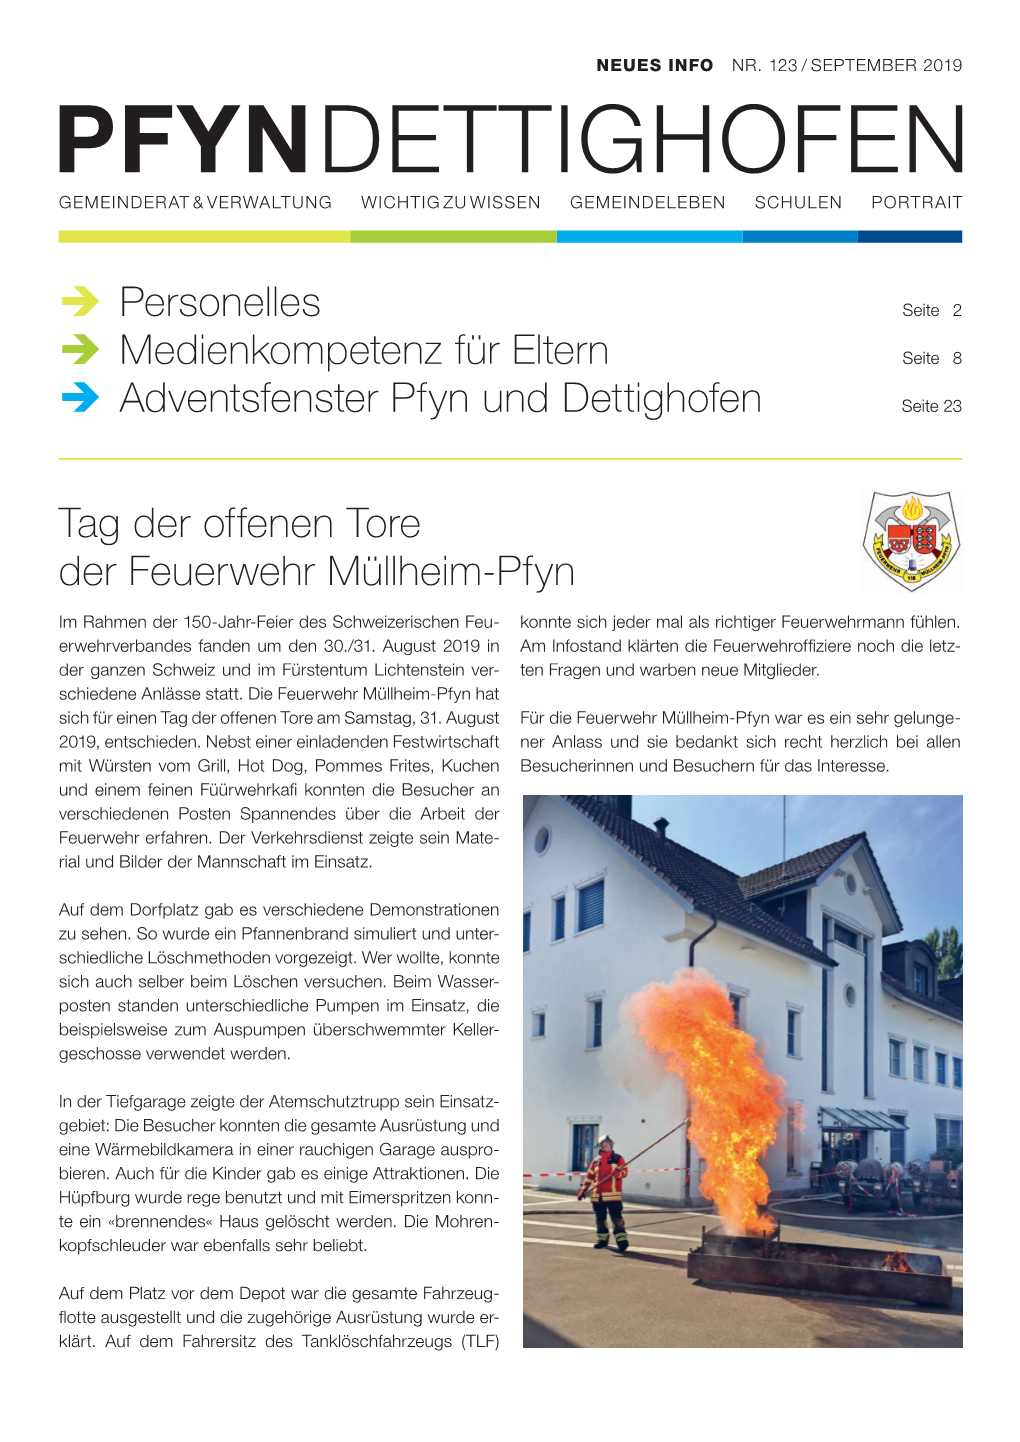 Tag Der Offenen Tore Der Feuerwehr Müllheim-Pfyn → Personelles